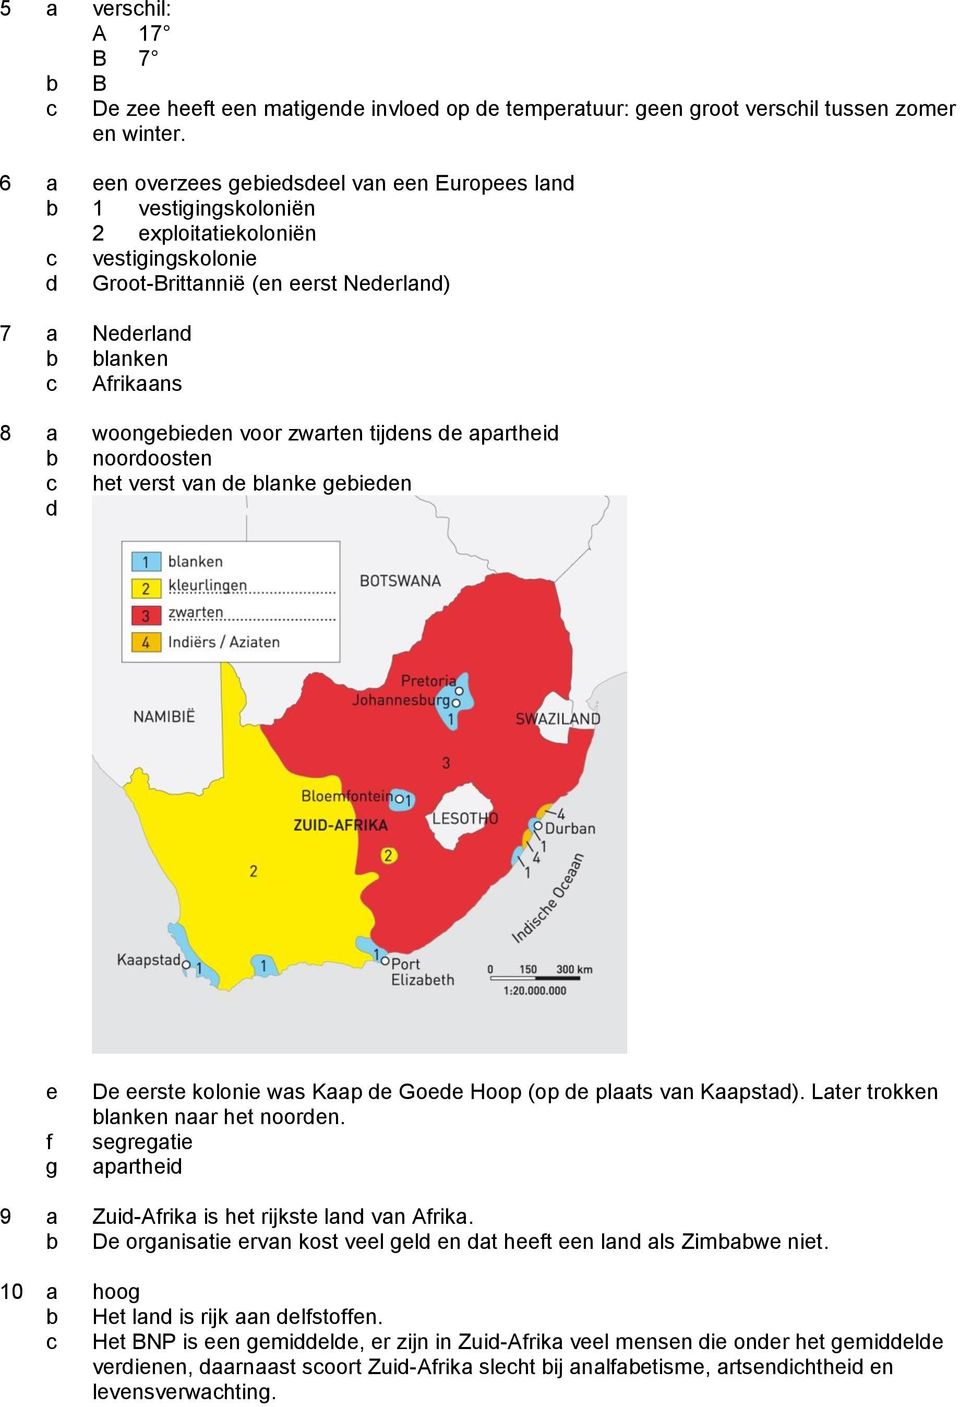 woongebieden voor zwarten tijdens de apartheid b noordoosten het verst van de blanke gebieden d e f g De eerste kolonie was Kaap de Goede Hoop (op de plaats van Kaapstad).